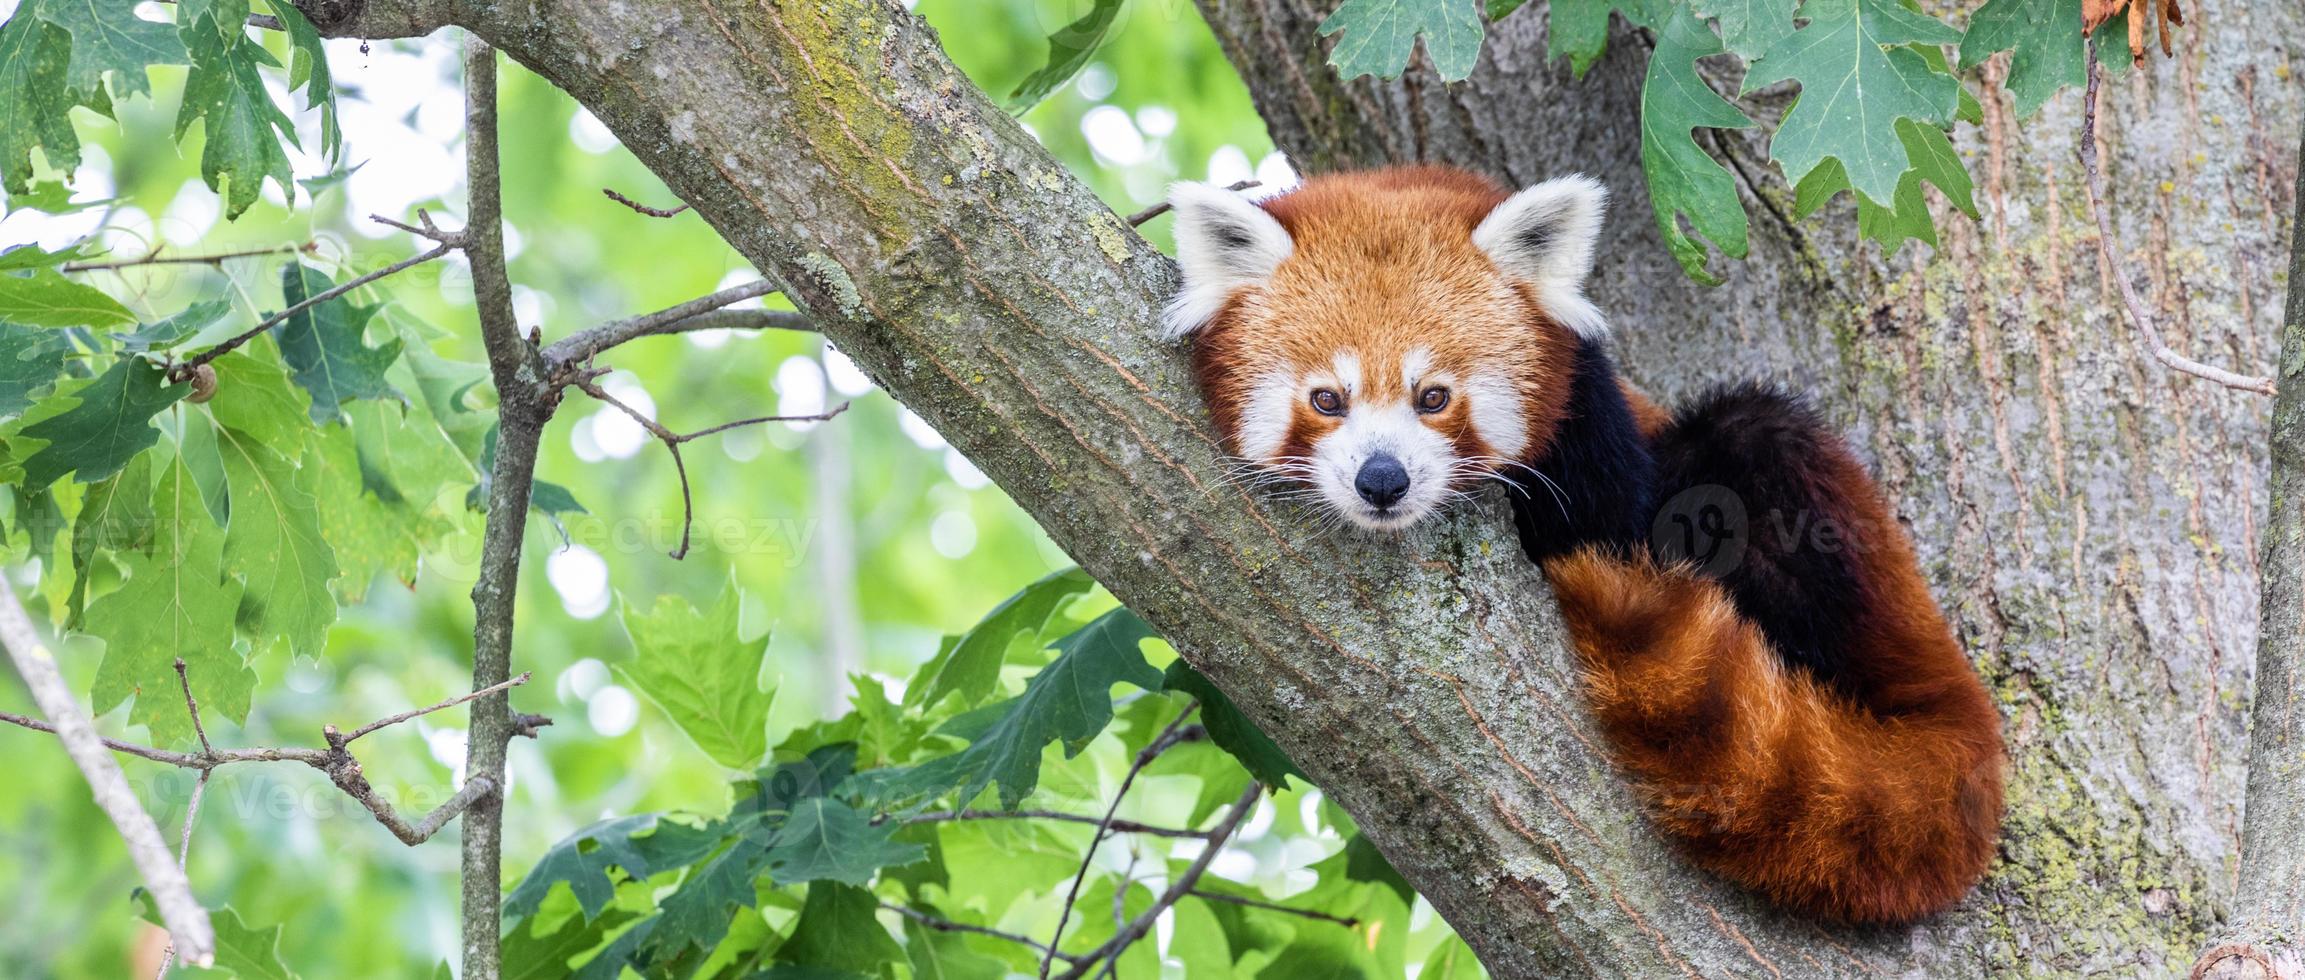 röd panda - ailurus fulgens - porträtt. gulligt djur som vilar lat på ett träd. foto